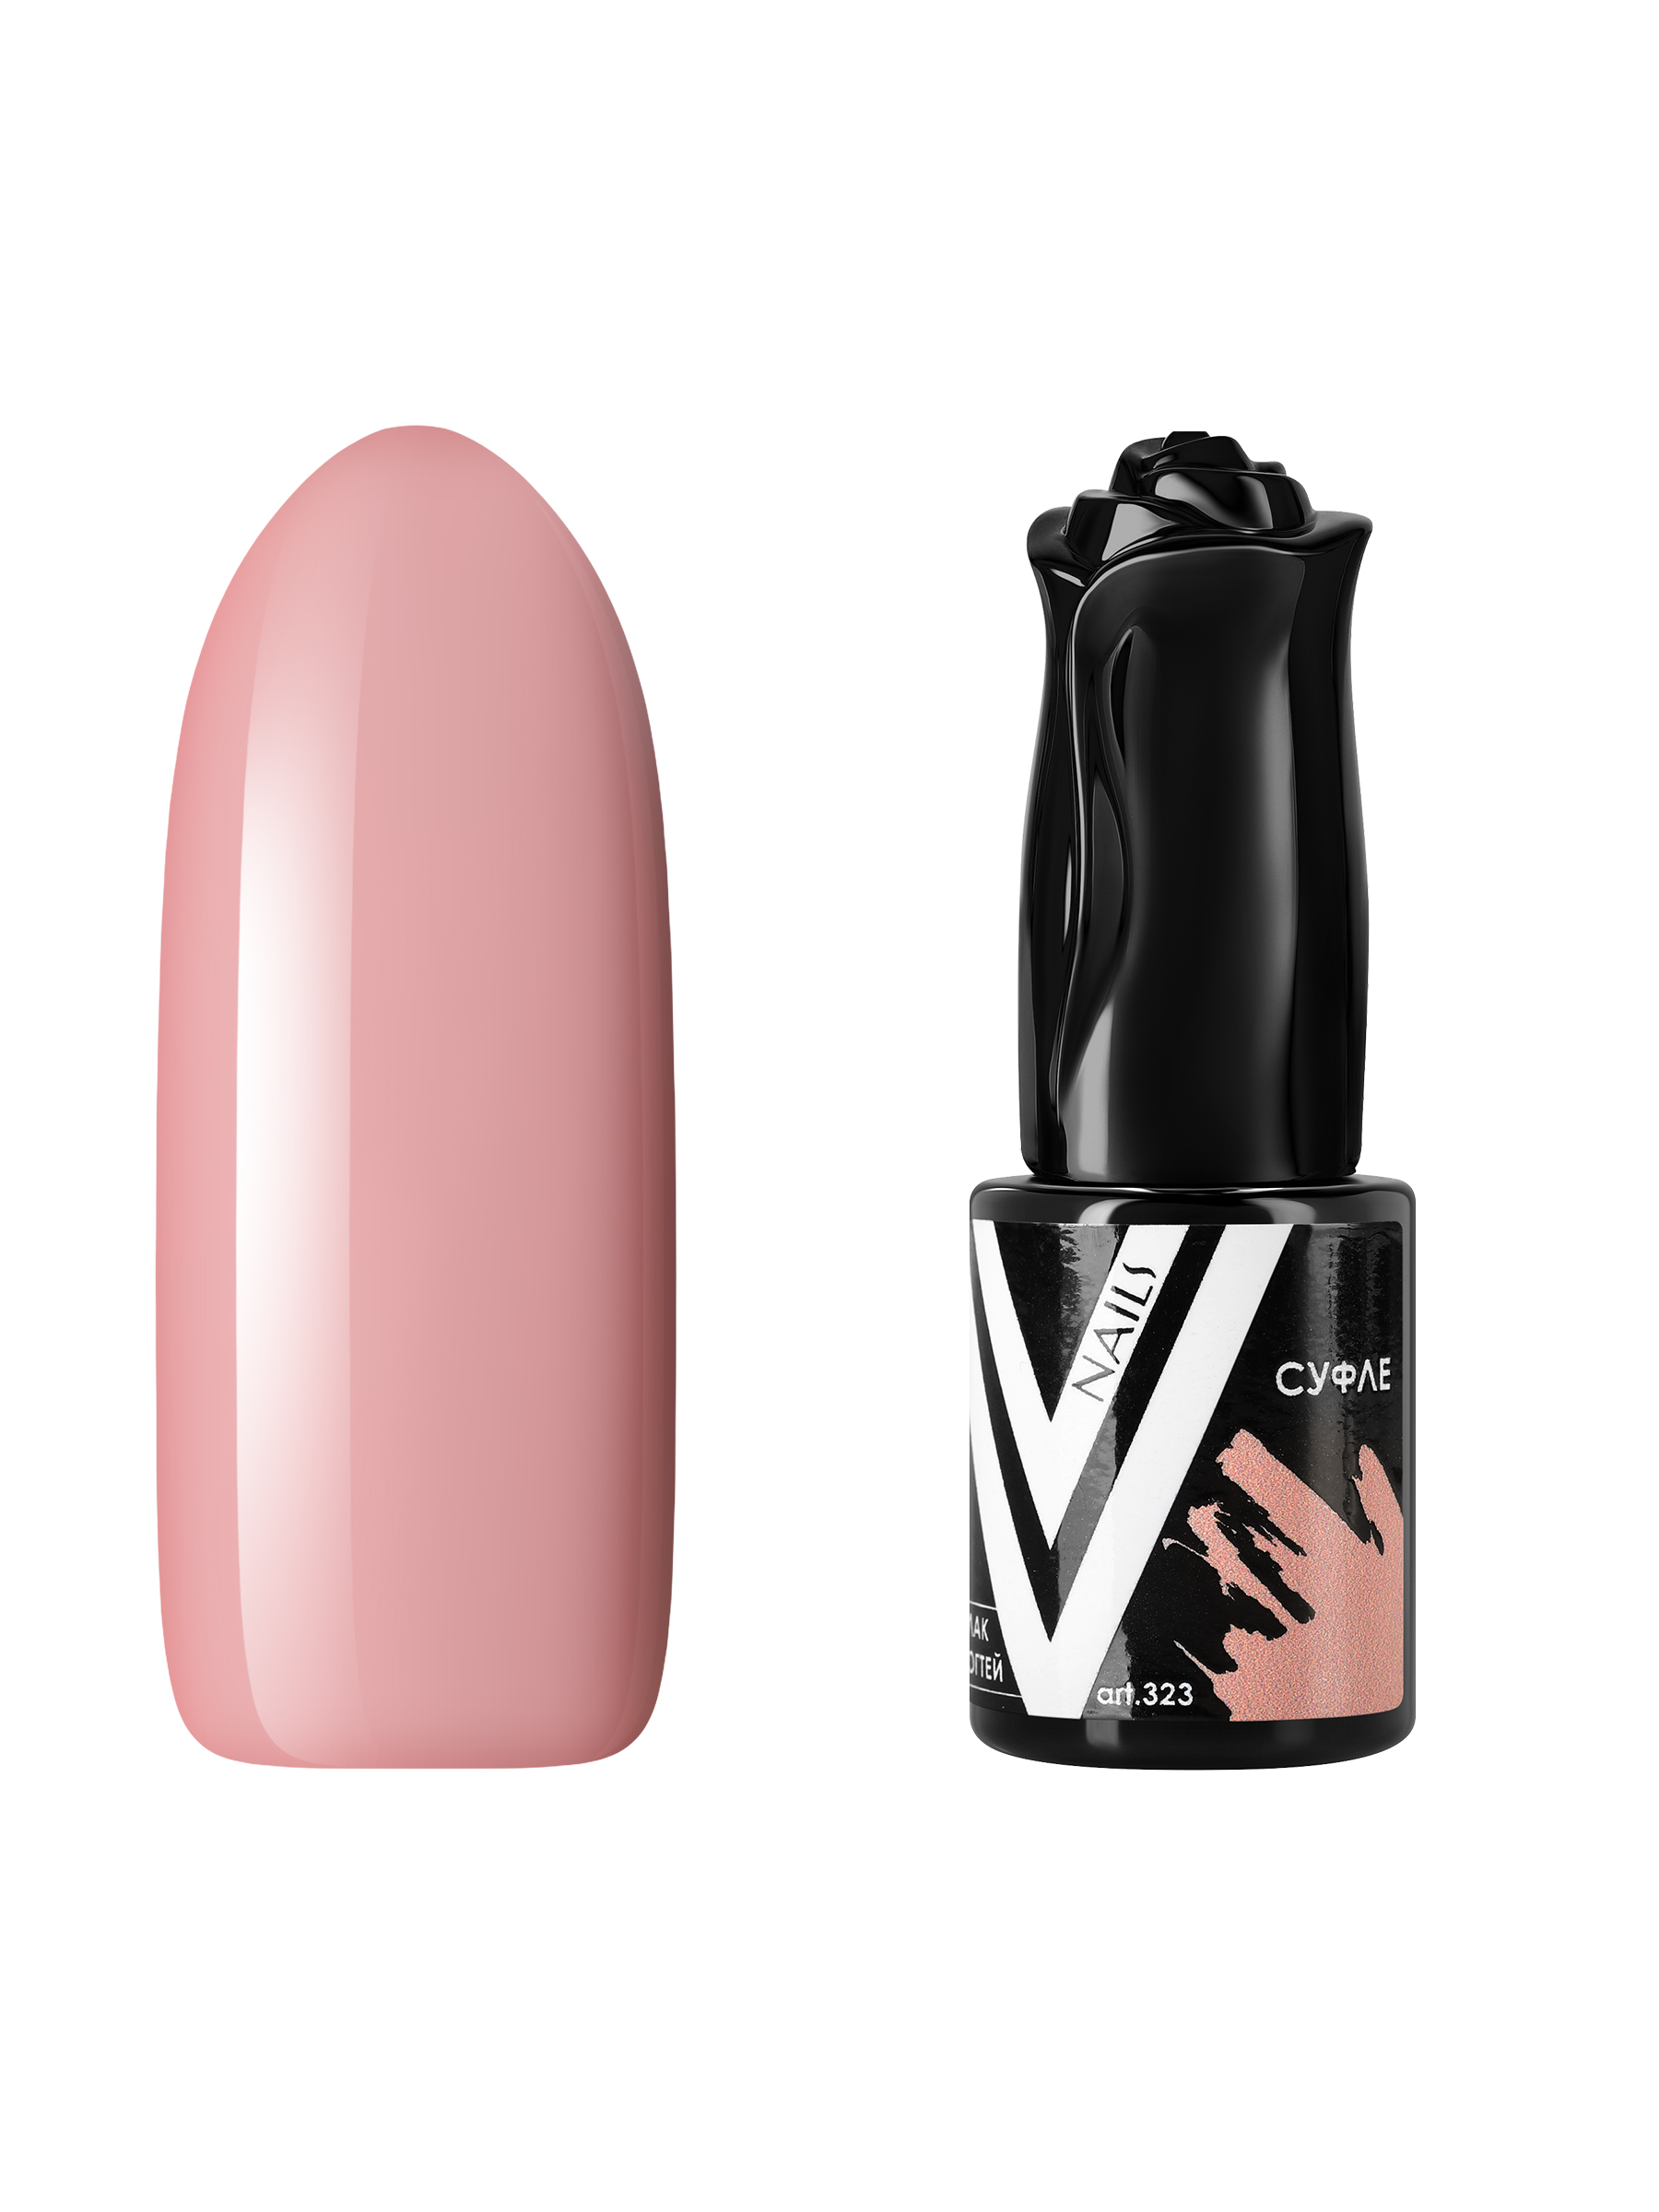 Гель-лак для ногтей Vogue Nails плотный, самовыравнивающийся, светлый, бежевый, 10 мл гель лак planet nails vortexx 651 8 мл